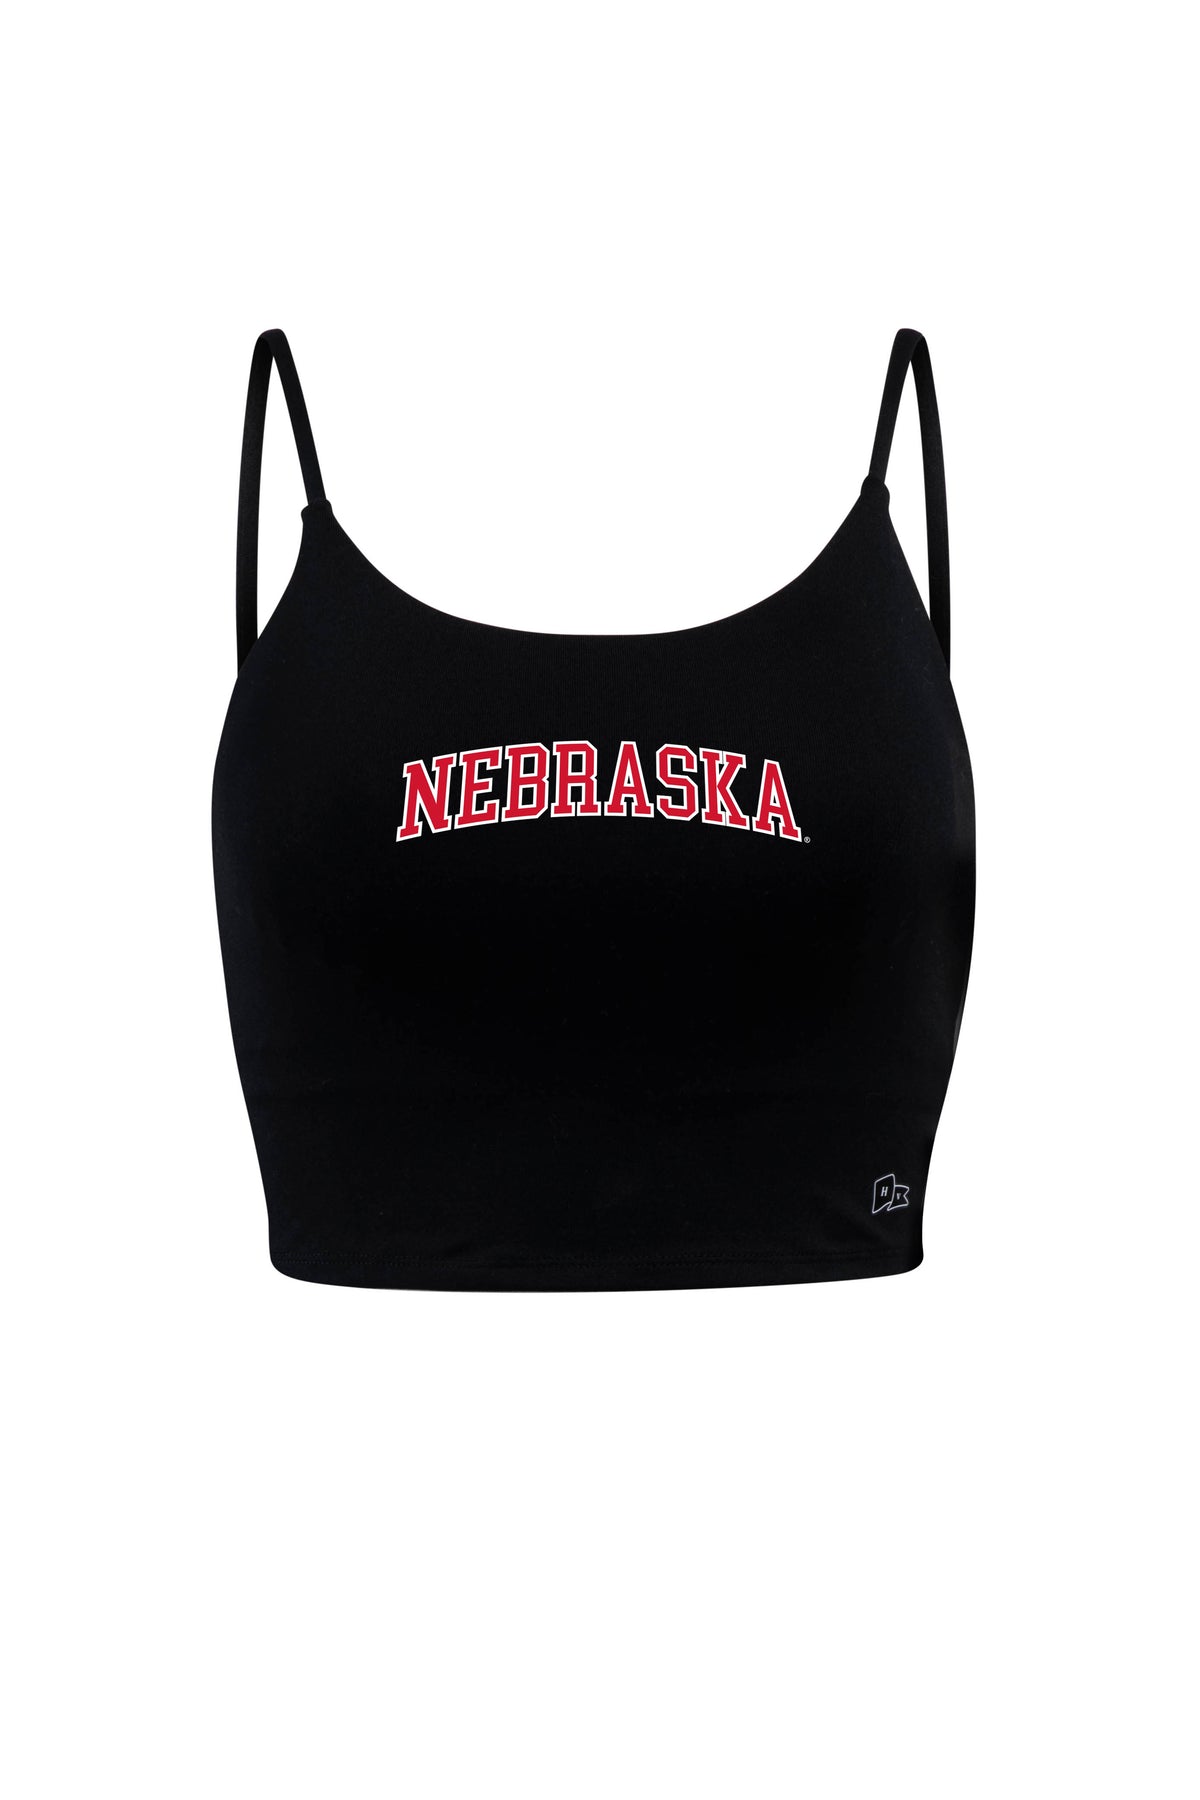 University of Nebraska Bra Tank Top